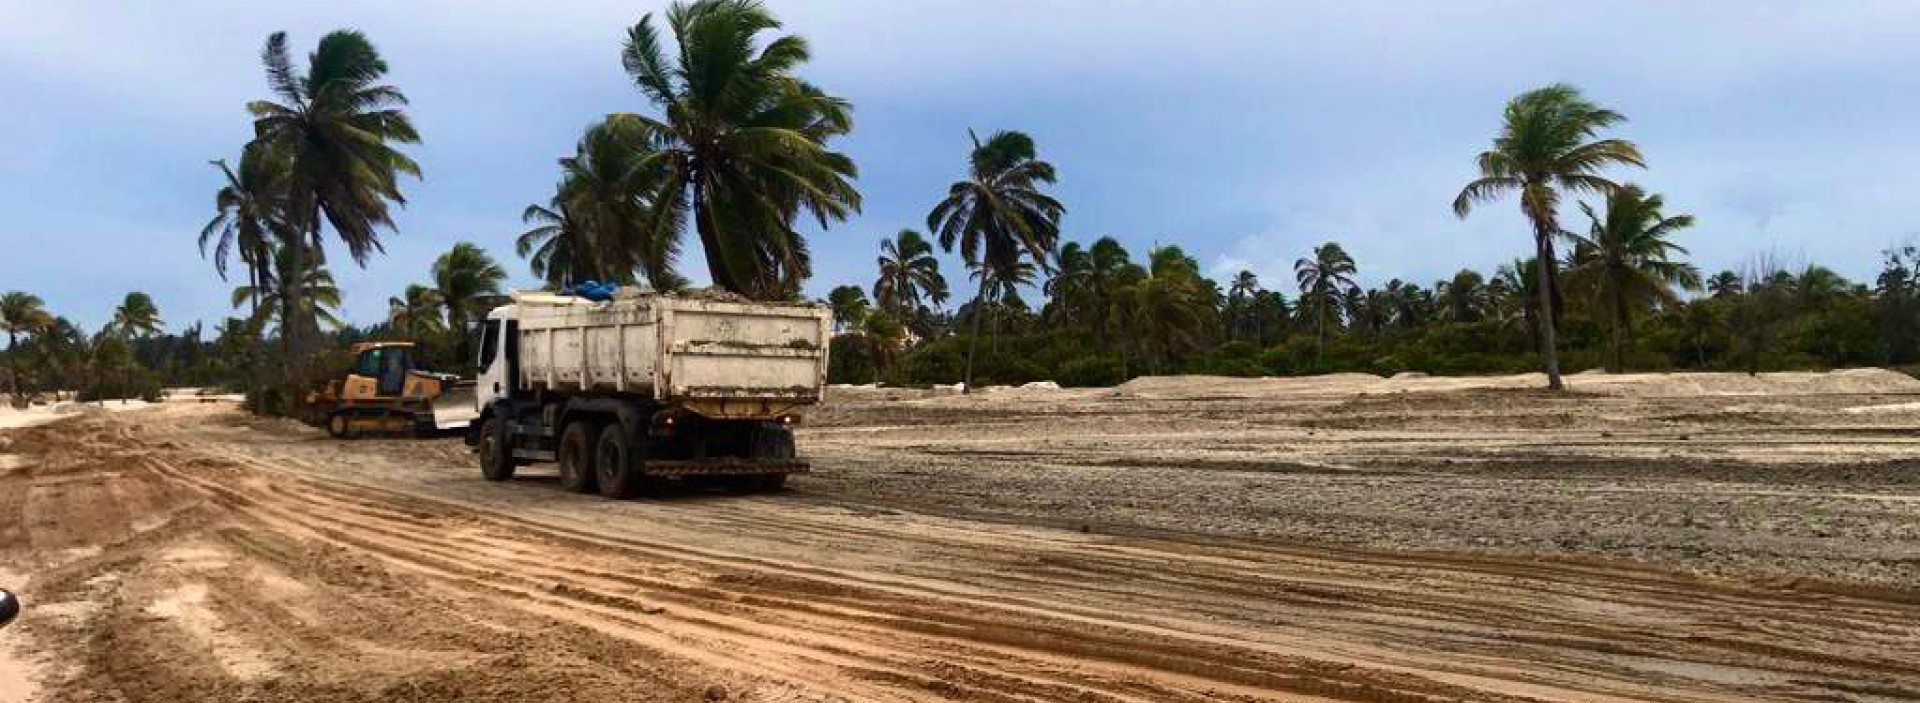 Prefeitura de Caucaia iniciou obras na Lagoa do Cauípe sem o estudo de impacto ambiental (Foto: LIANA QUEIROZ / ESPECIAL PARA O POVO)